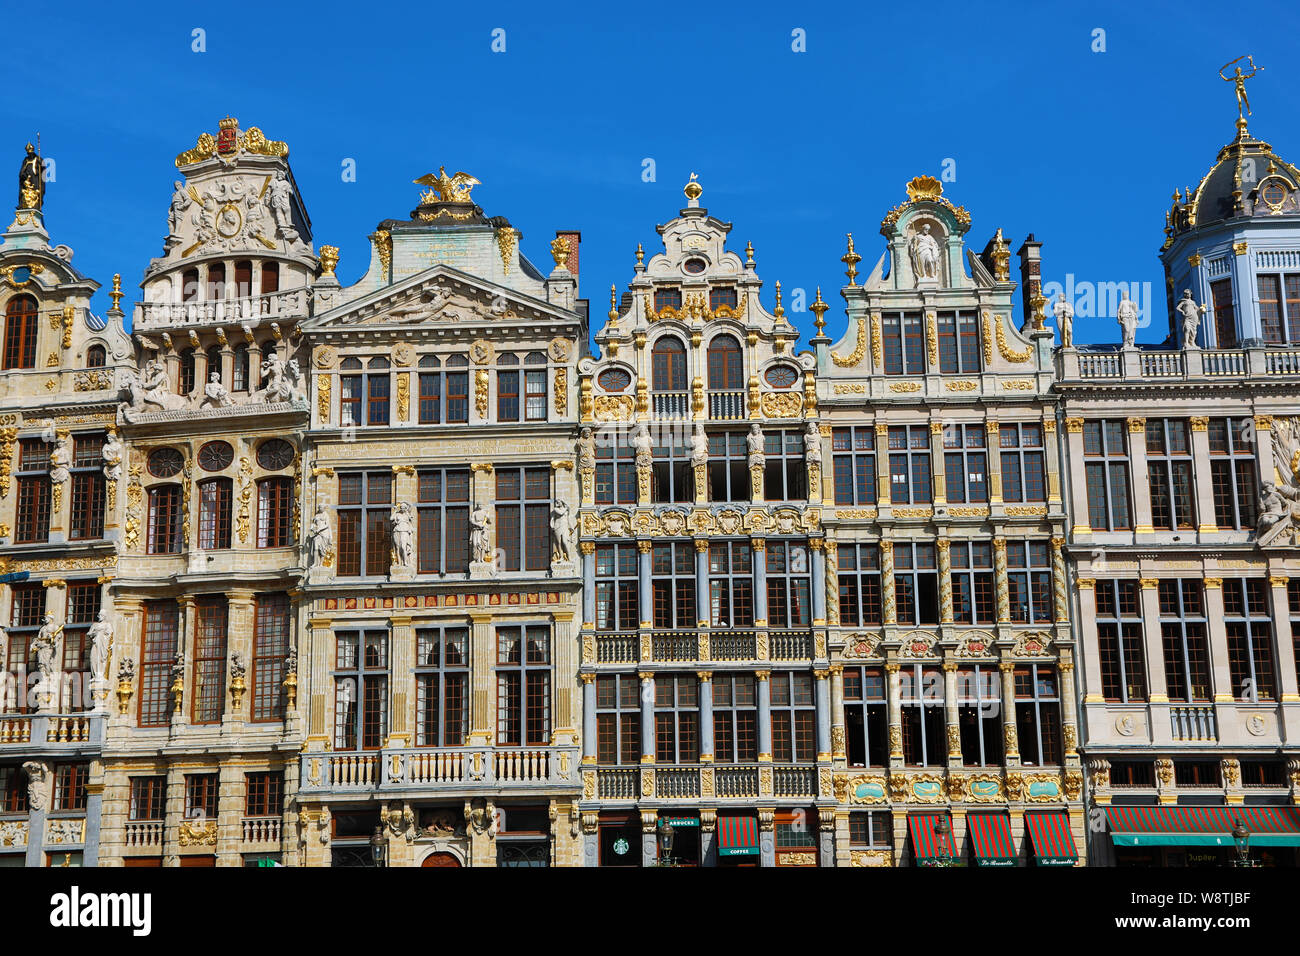 Los edificios de la Grand Place o Grote Markt, Bruselas, Bélgica Foto de stock